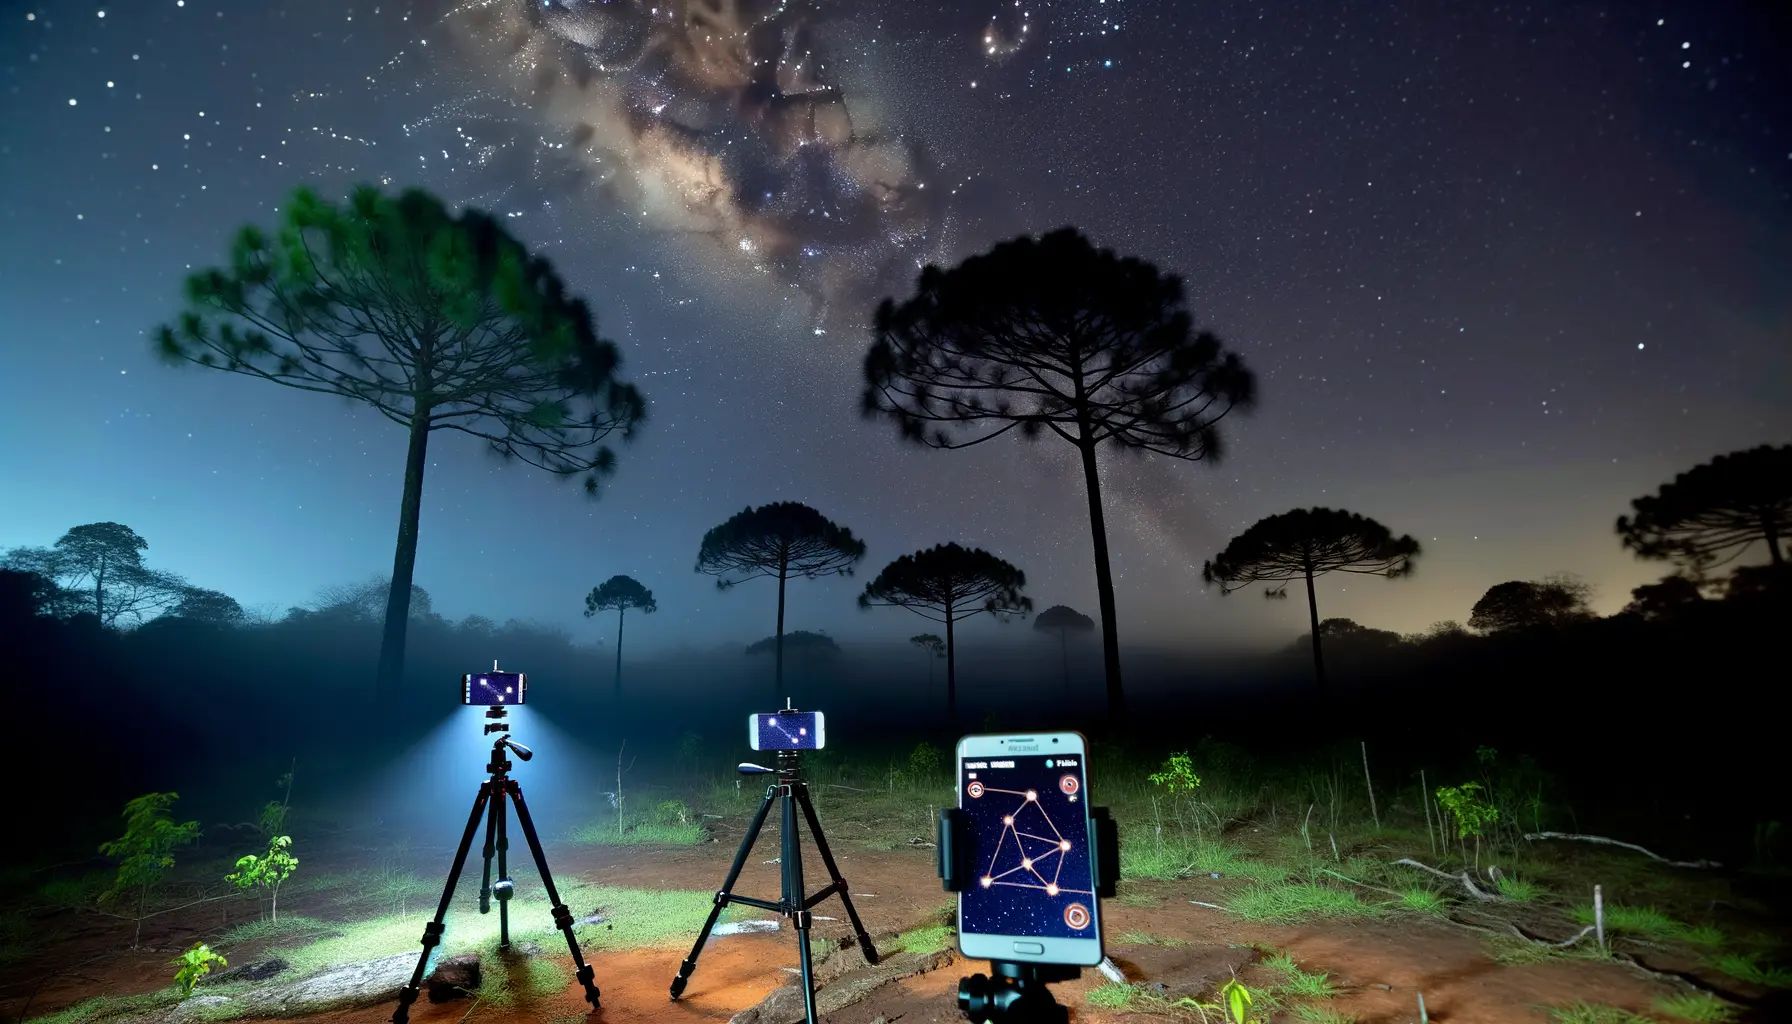 Magisches Nachtbild von Smartphones unter dem Sternenhimmel